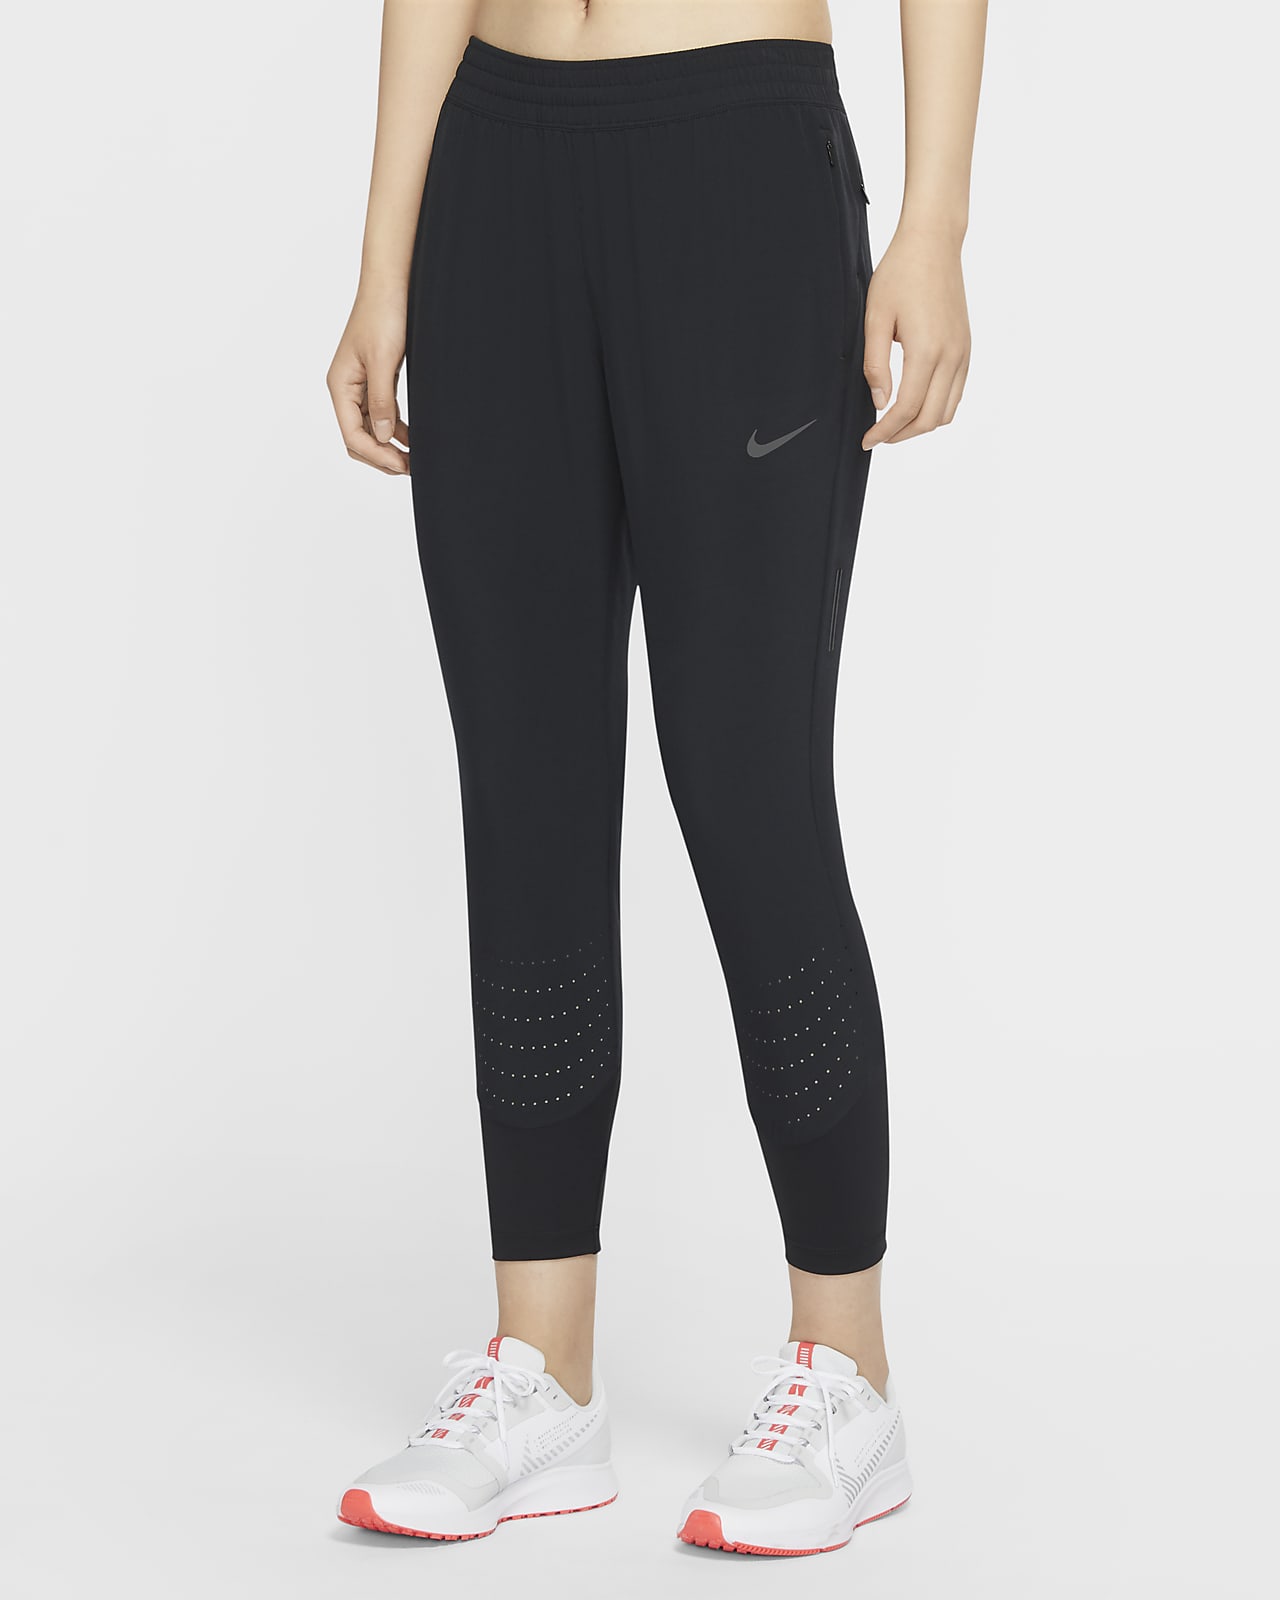 Pantaloni da running Nike Swift - Donna 